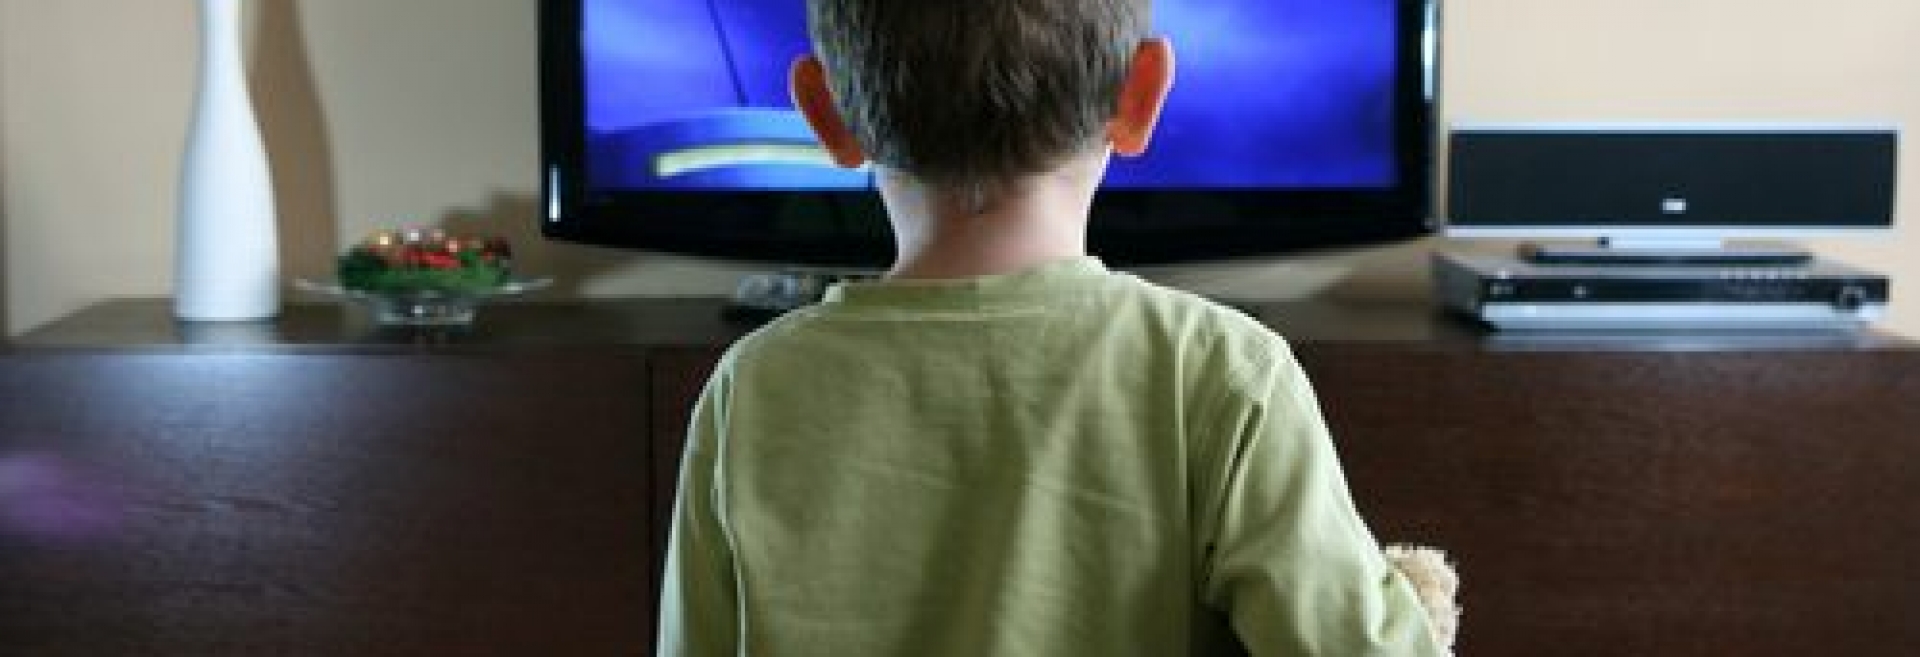 Παιδί και τηλεόραση